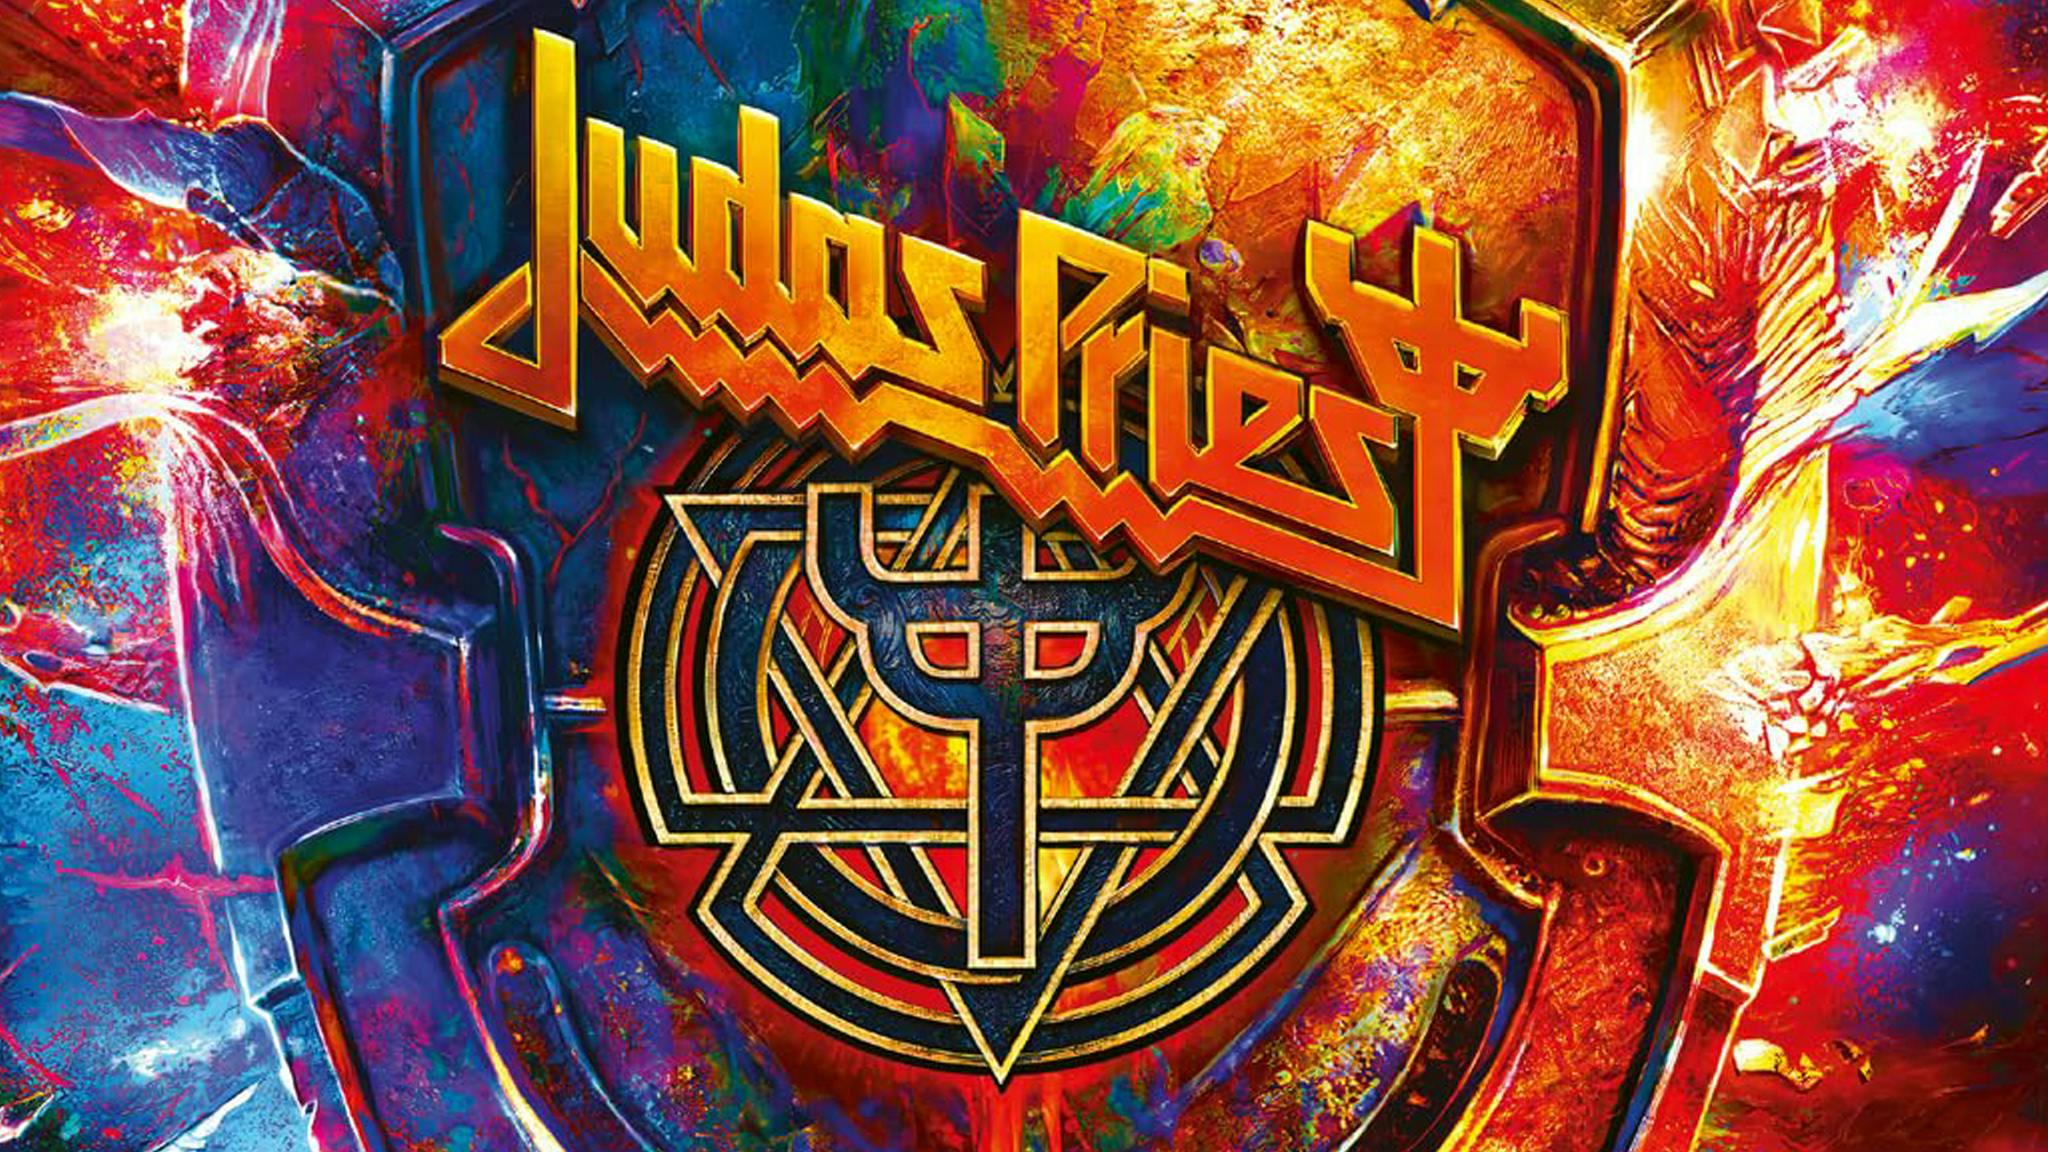 Album review: Judas Priest – Invincible Shield